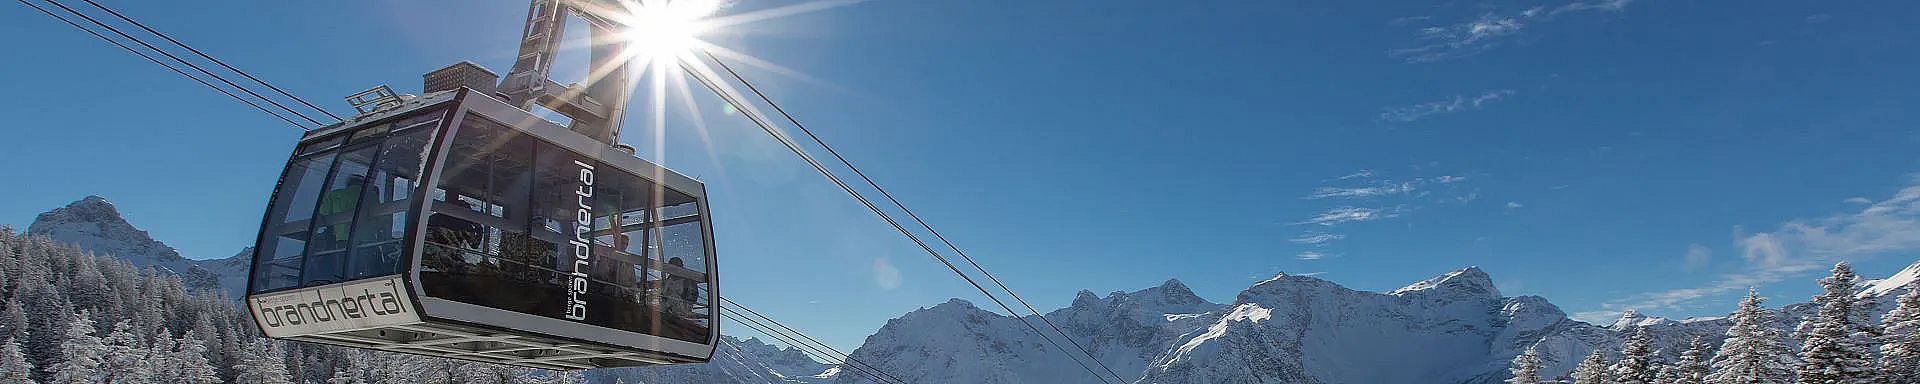 brandnertal-bergbahnen-panoramabahn-seitlich-winter